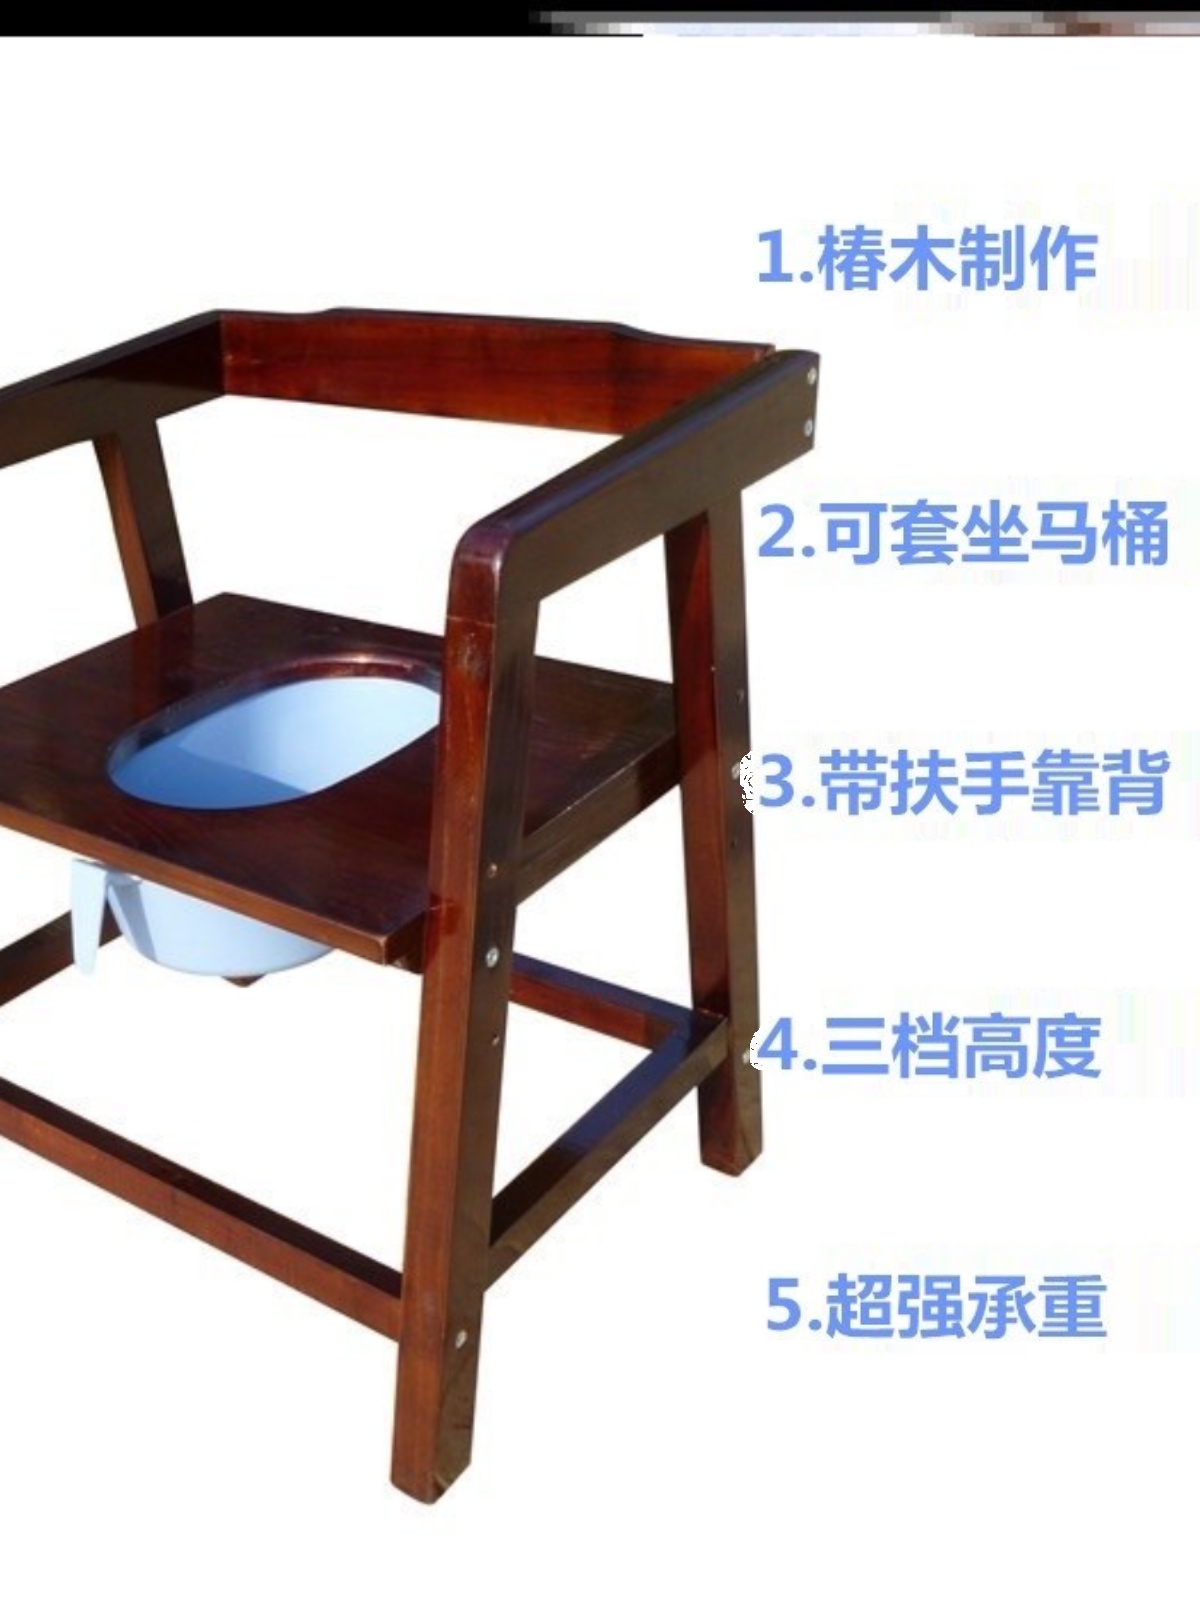 农村人蹲凳坐蹲便器两用改坐便大便坐椅实木移动老人座便器椅子器